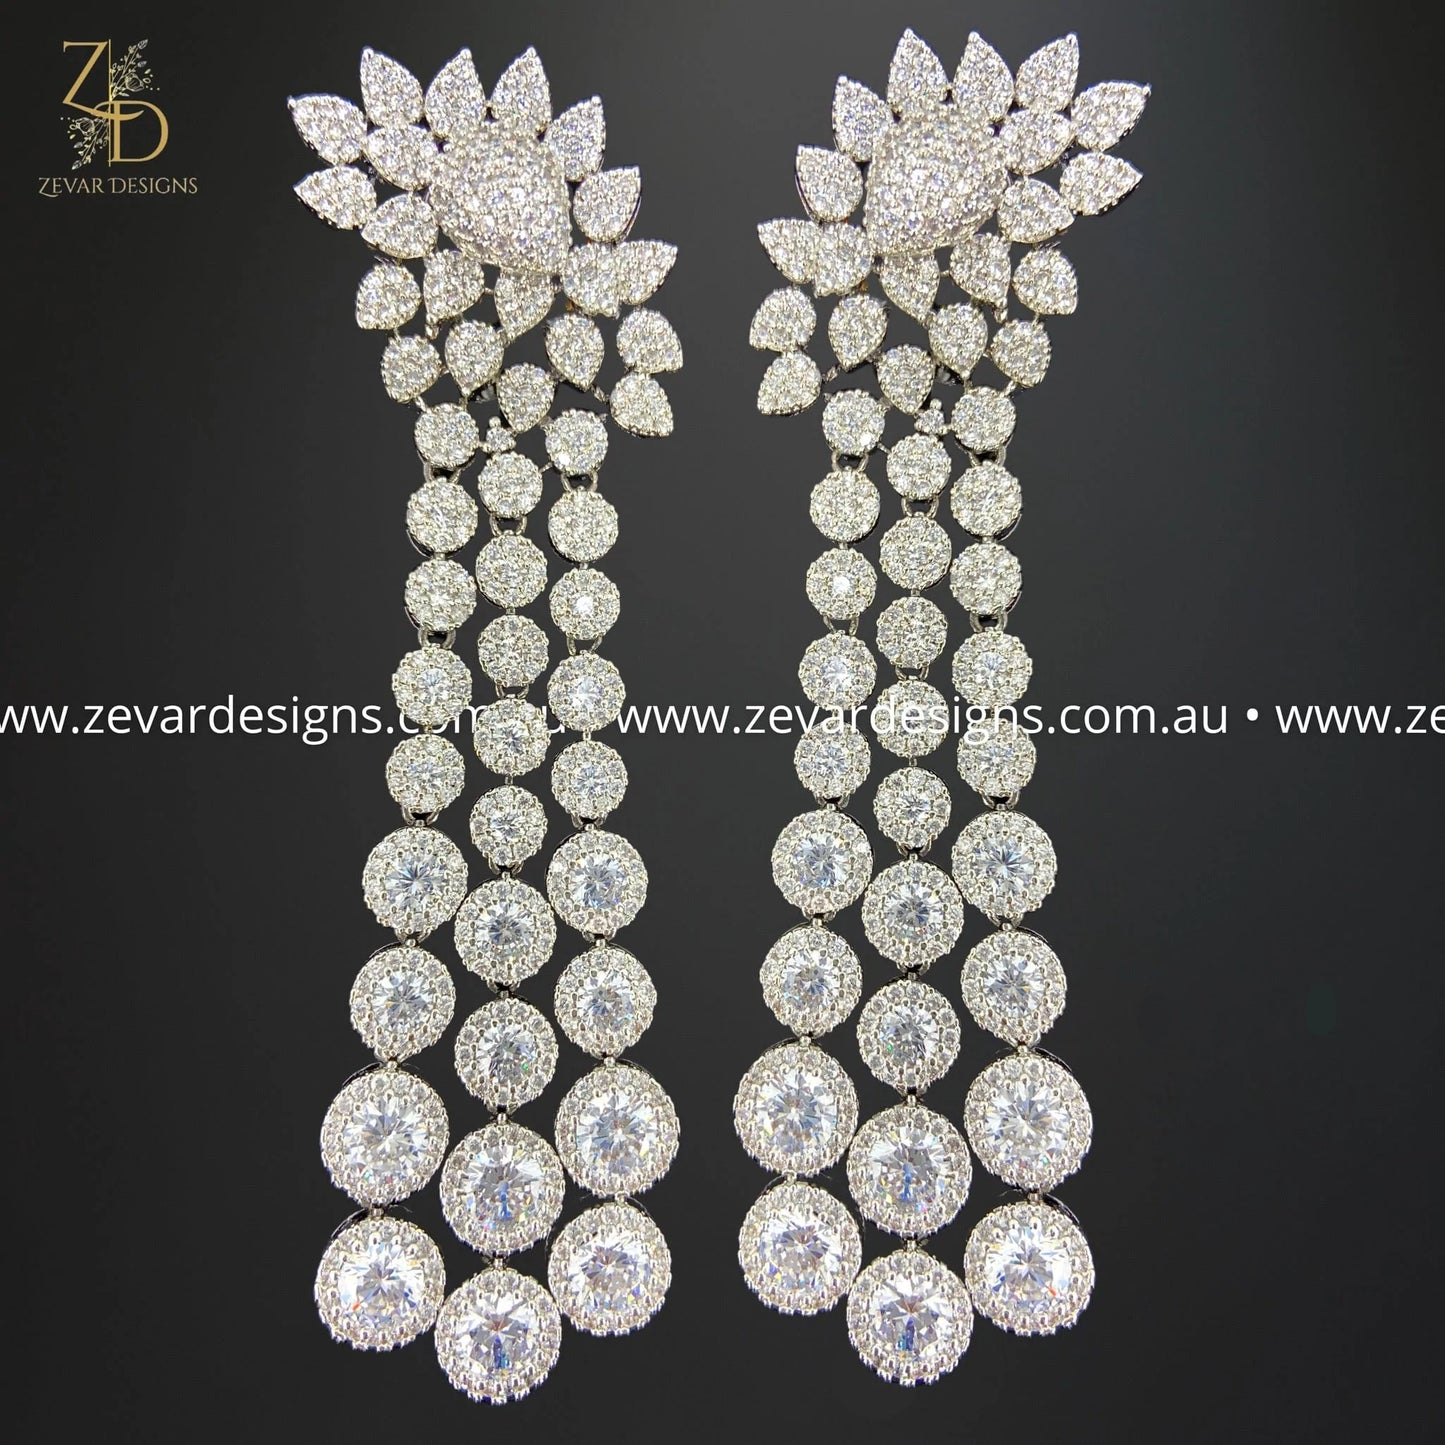 Zevar Designs Indo-Western Earrings AD/Zircon Earrings in Black Finish